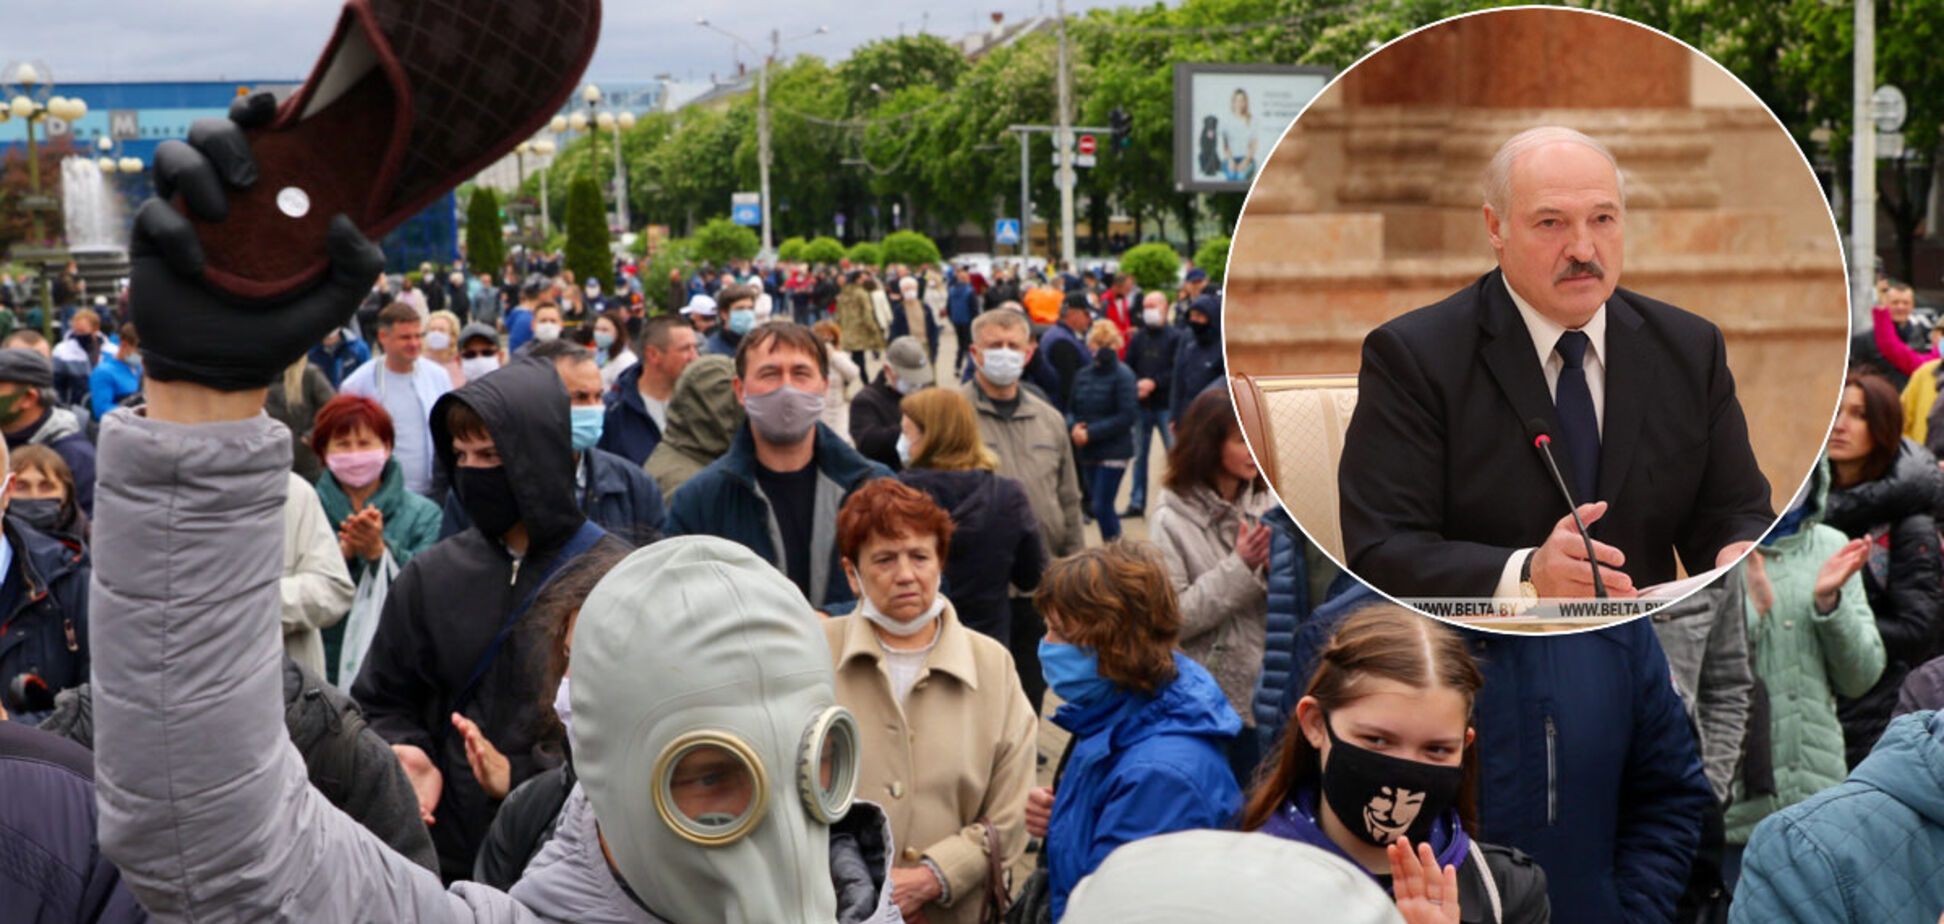 Журналистка рассказала о назревающей революции в Беларуси: люди массово выходят на митинги